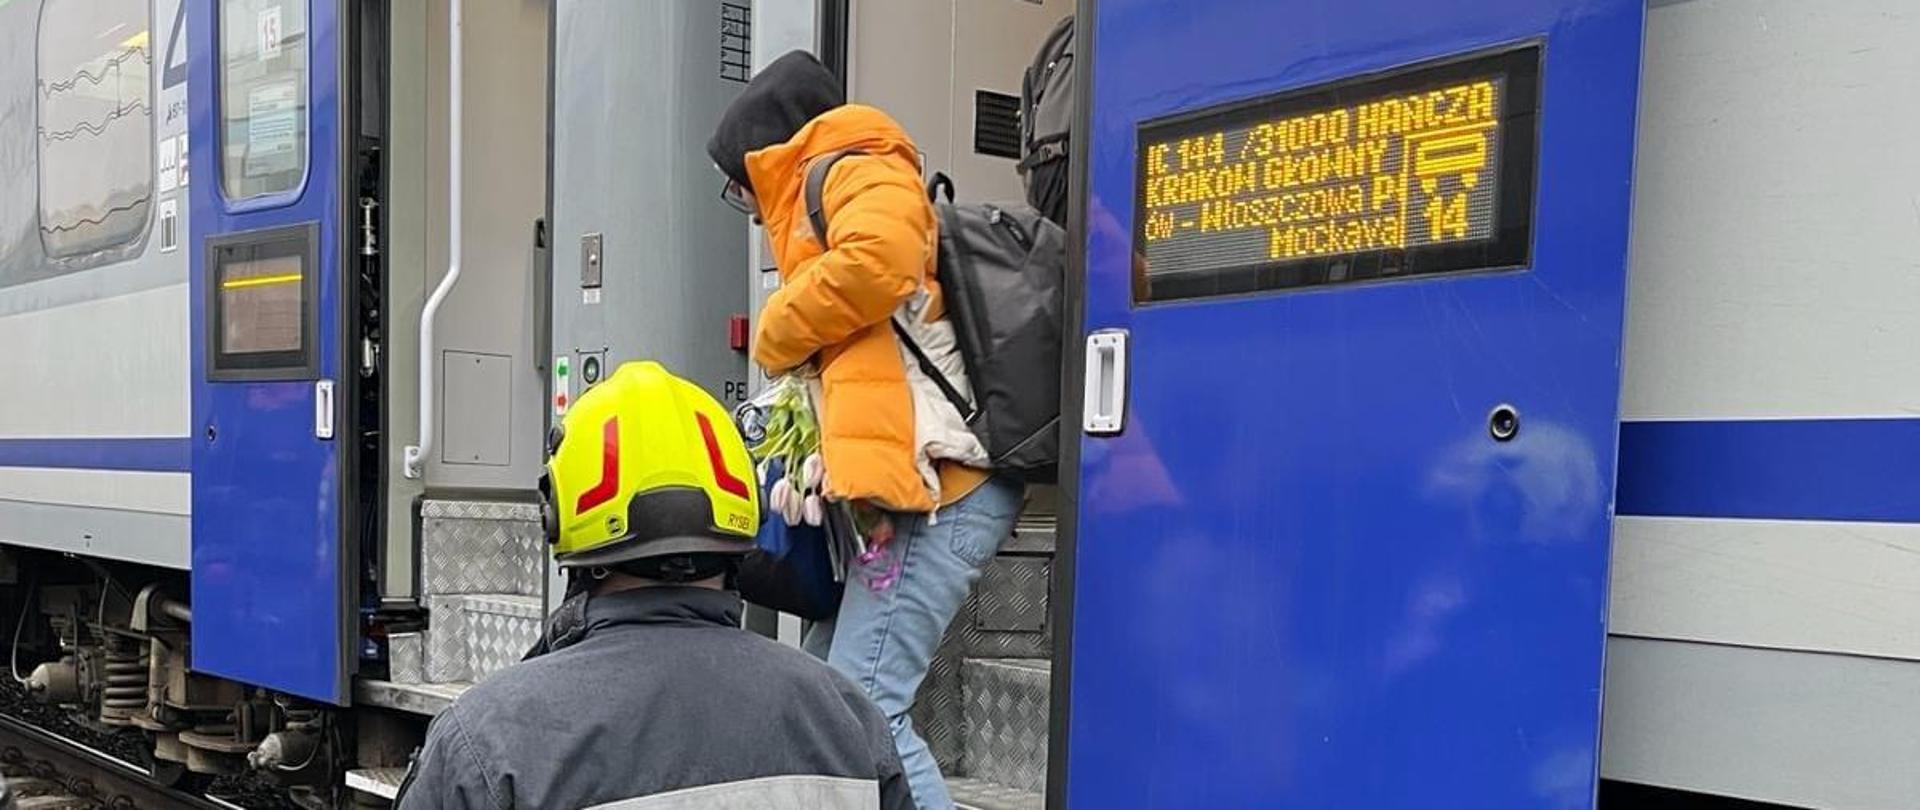 Strażak OSP pomagający pasażerowi w bezpieczny sposób przejść do sprawnego pociągu podstawionego przez przewoźnika.